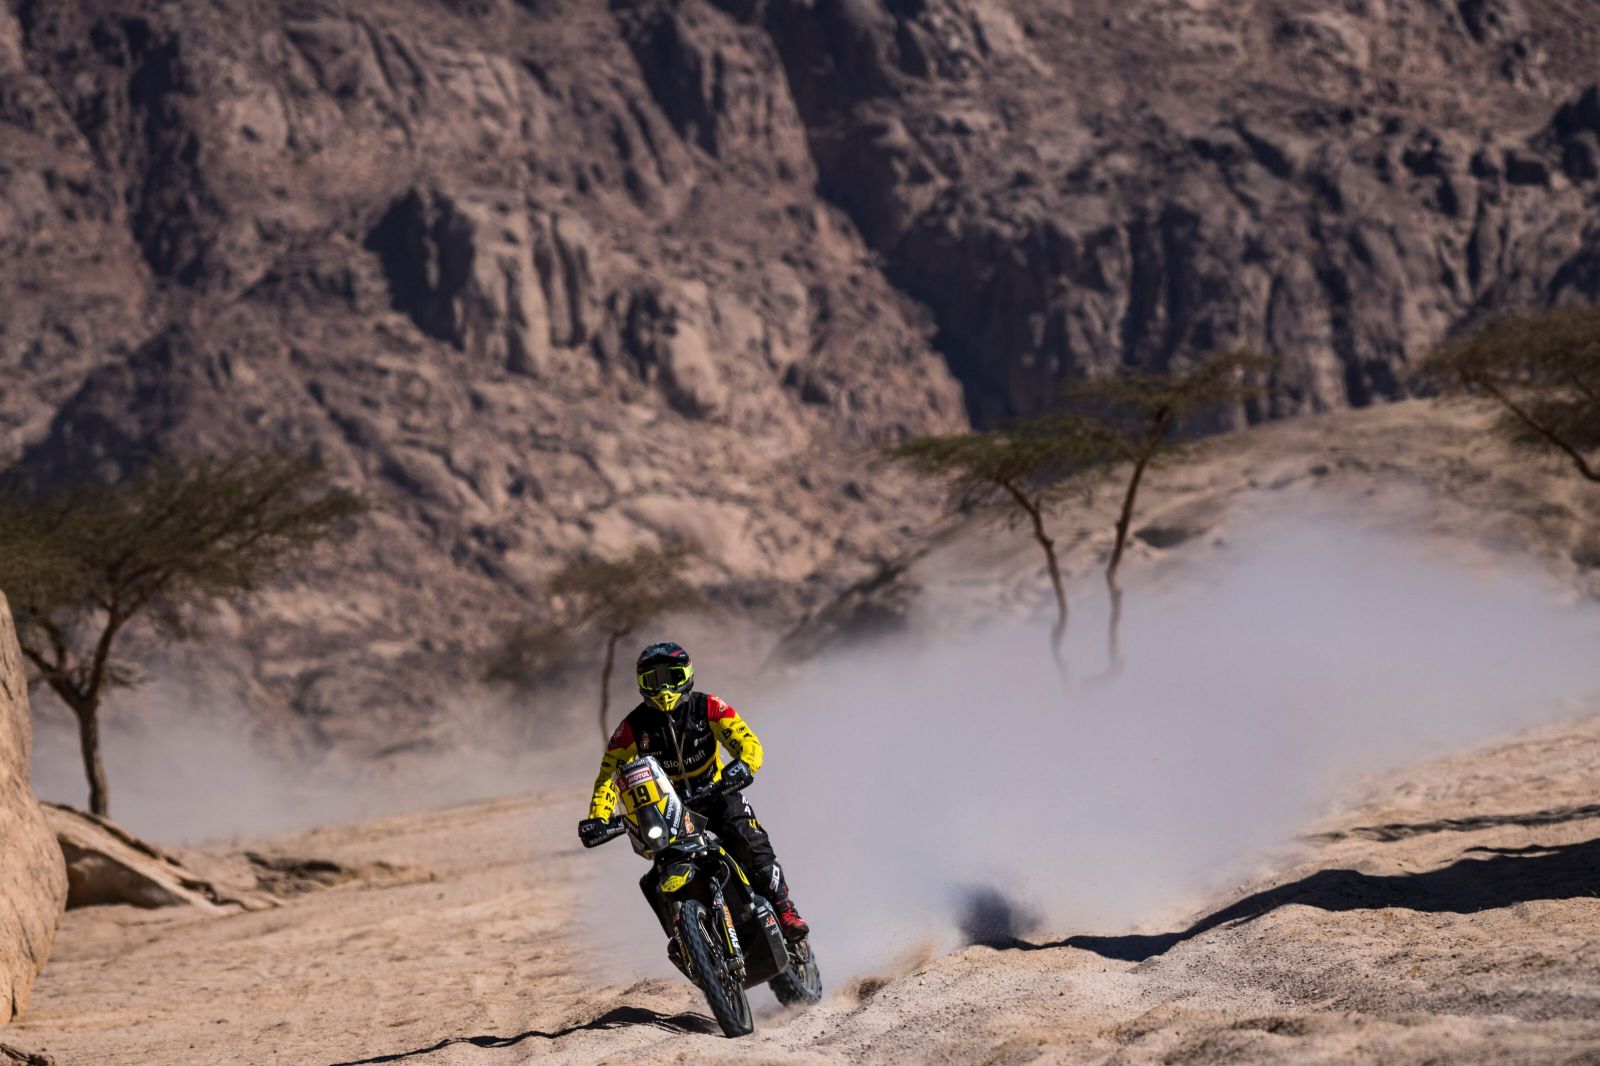 Sleduj Štefana Svitka naživo. Obháji na rally Dakar 2. miesto z roku 2016?